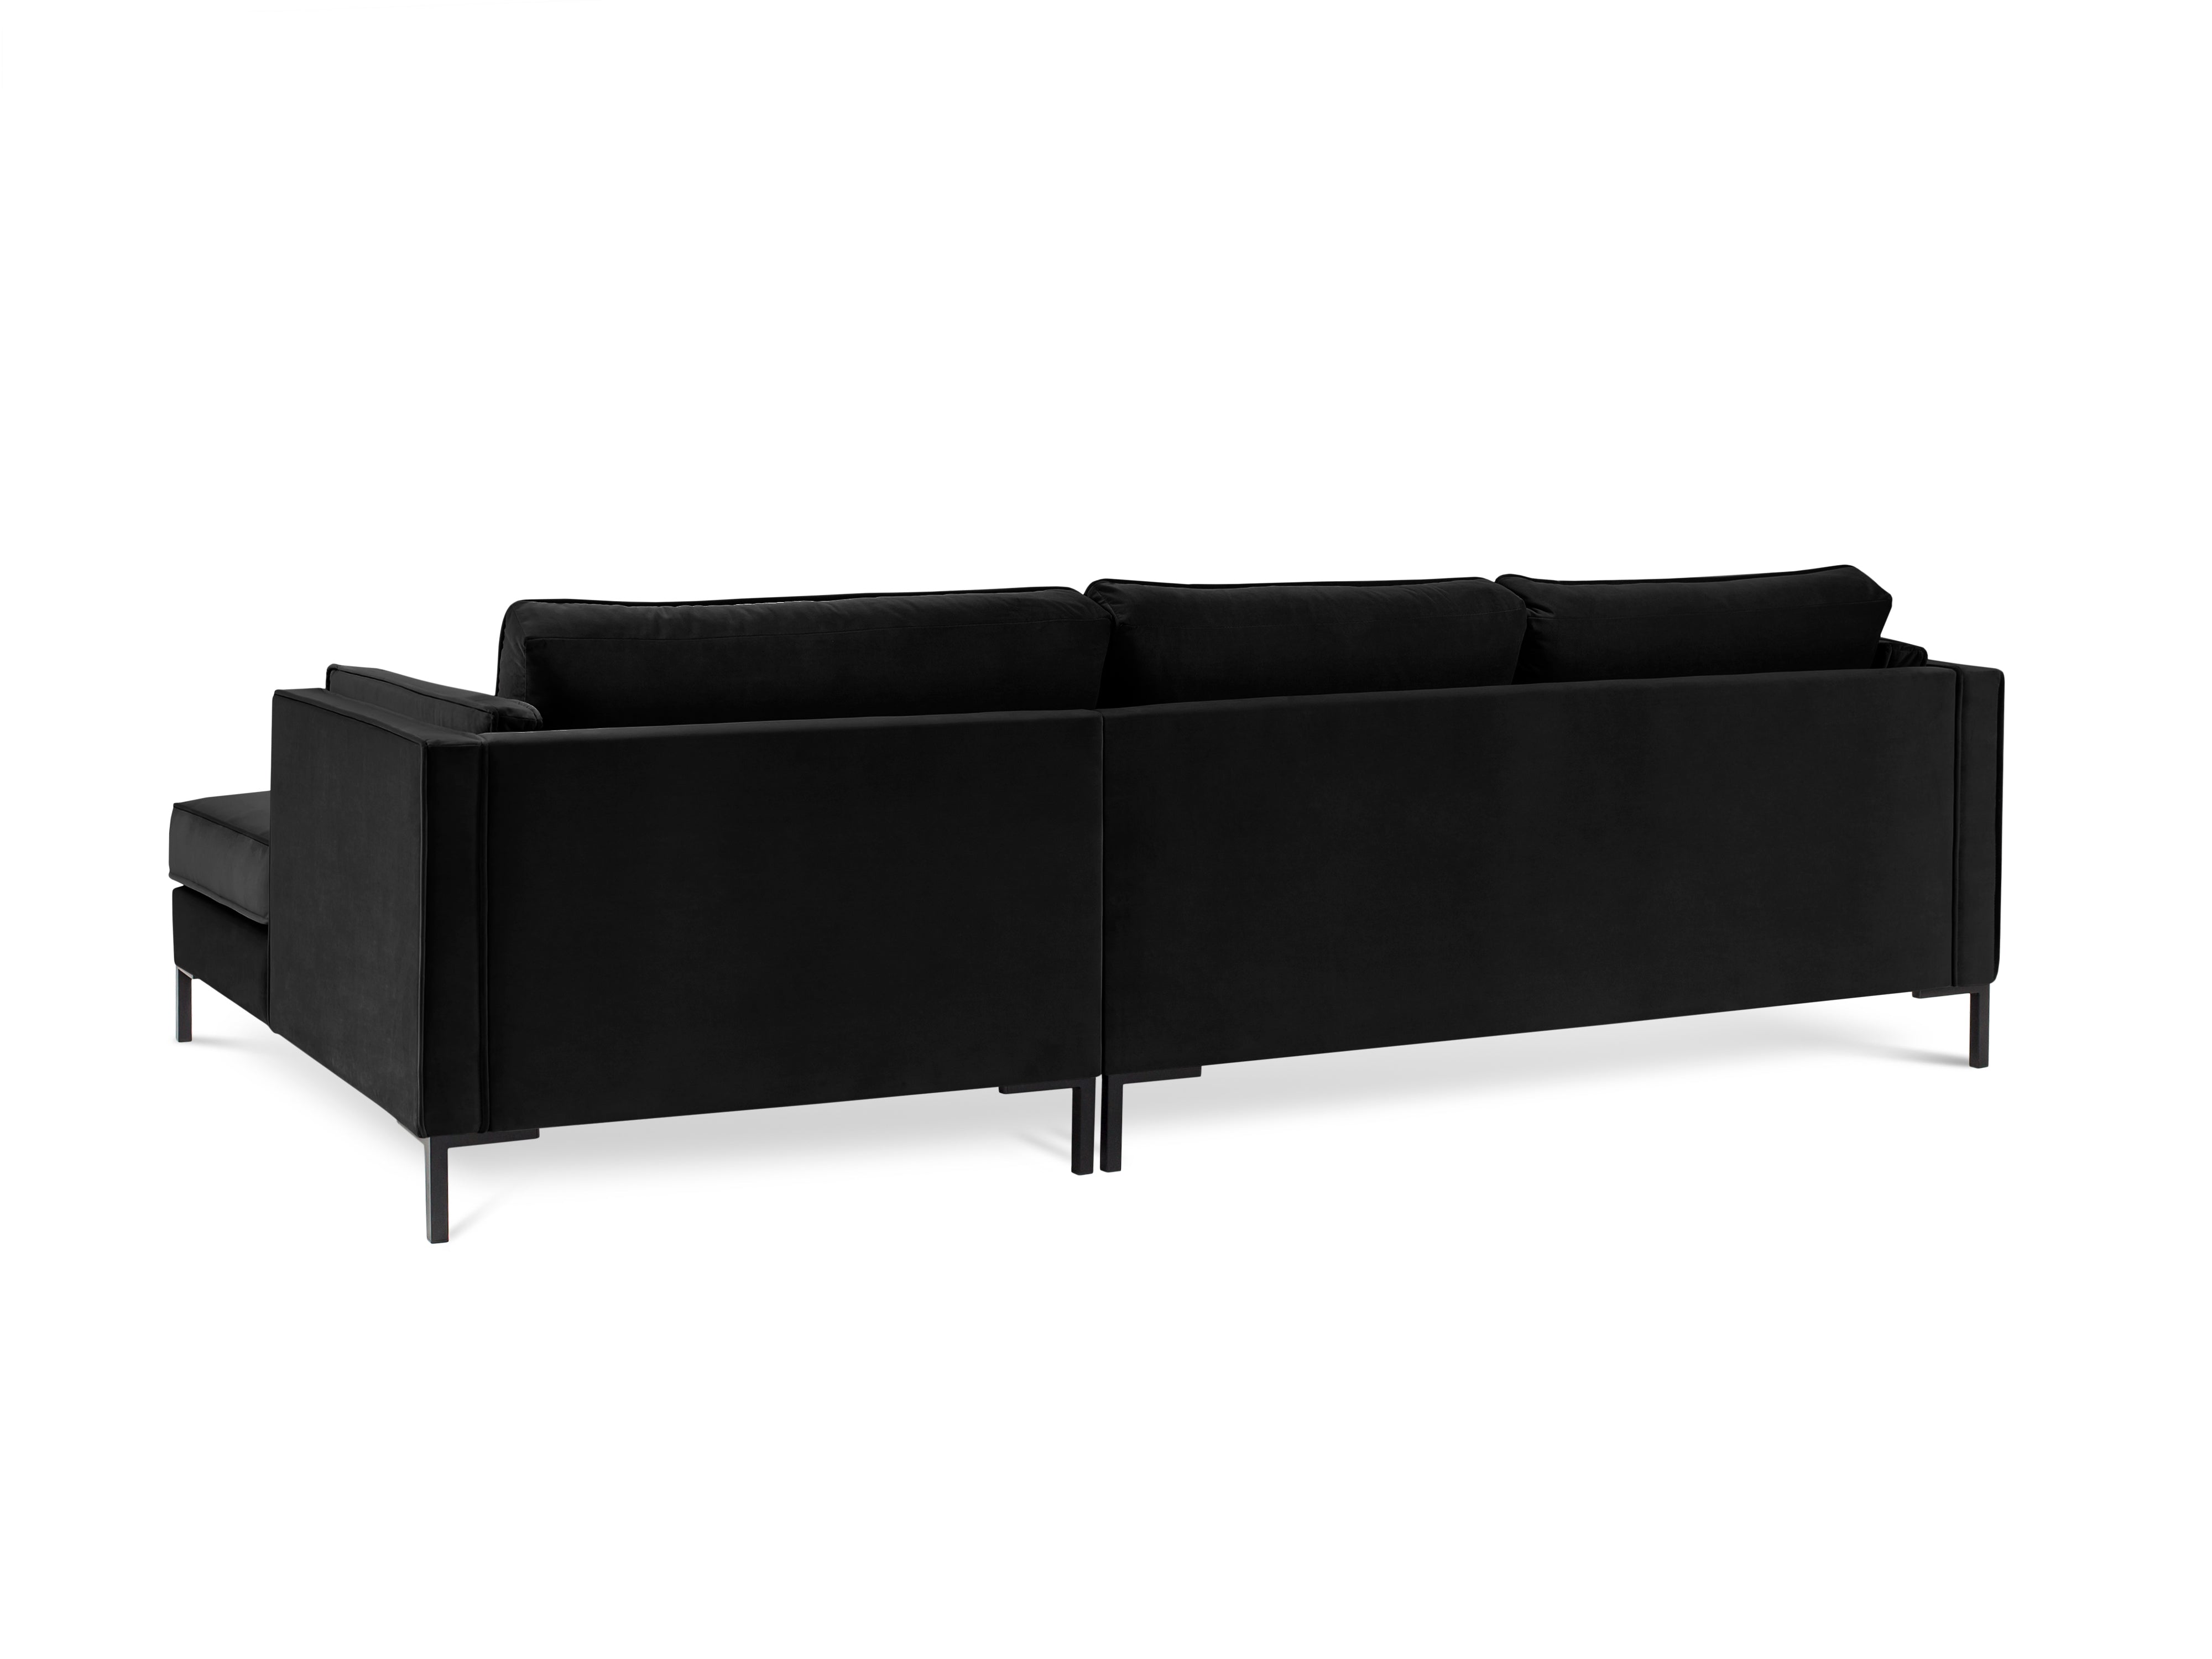 LUIS black velvet right-hand corner sofa with black base